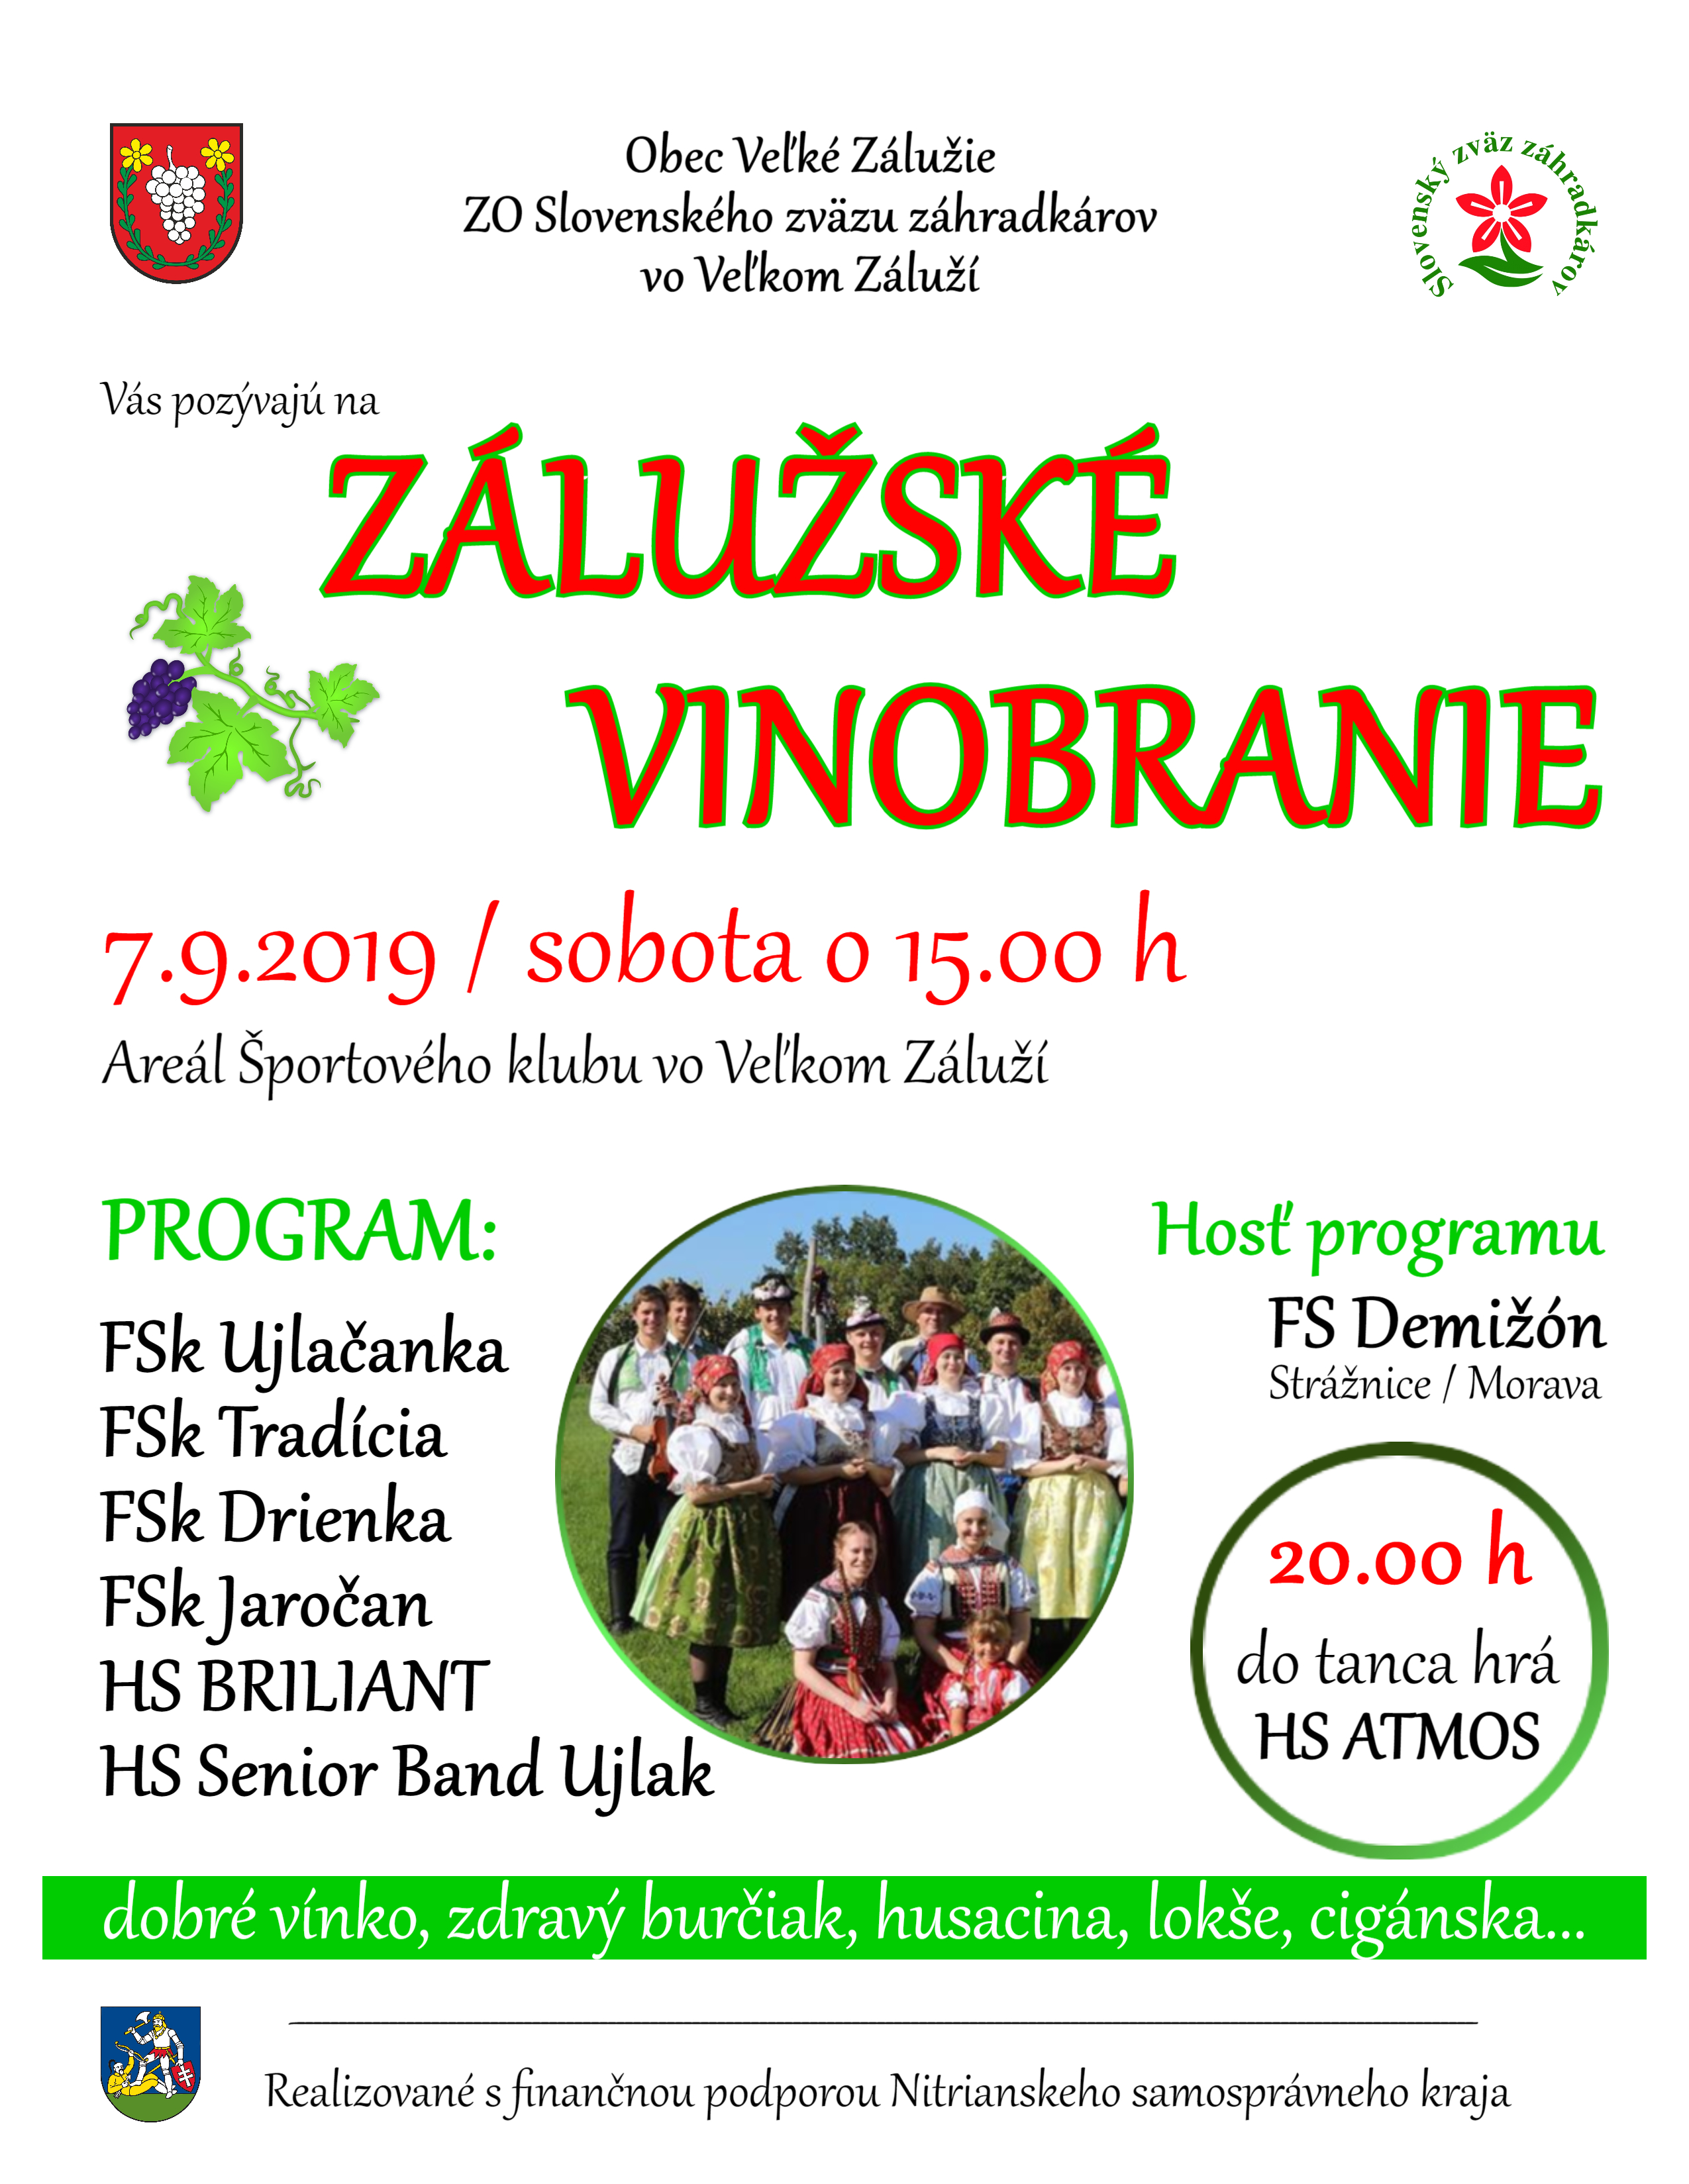 Zálužské vinobranie 2019 Veľké Zálužie